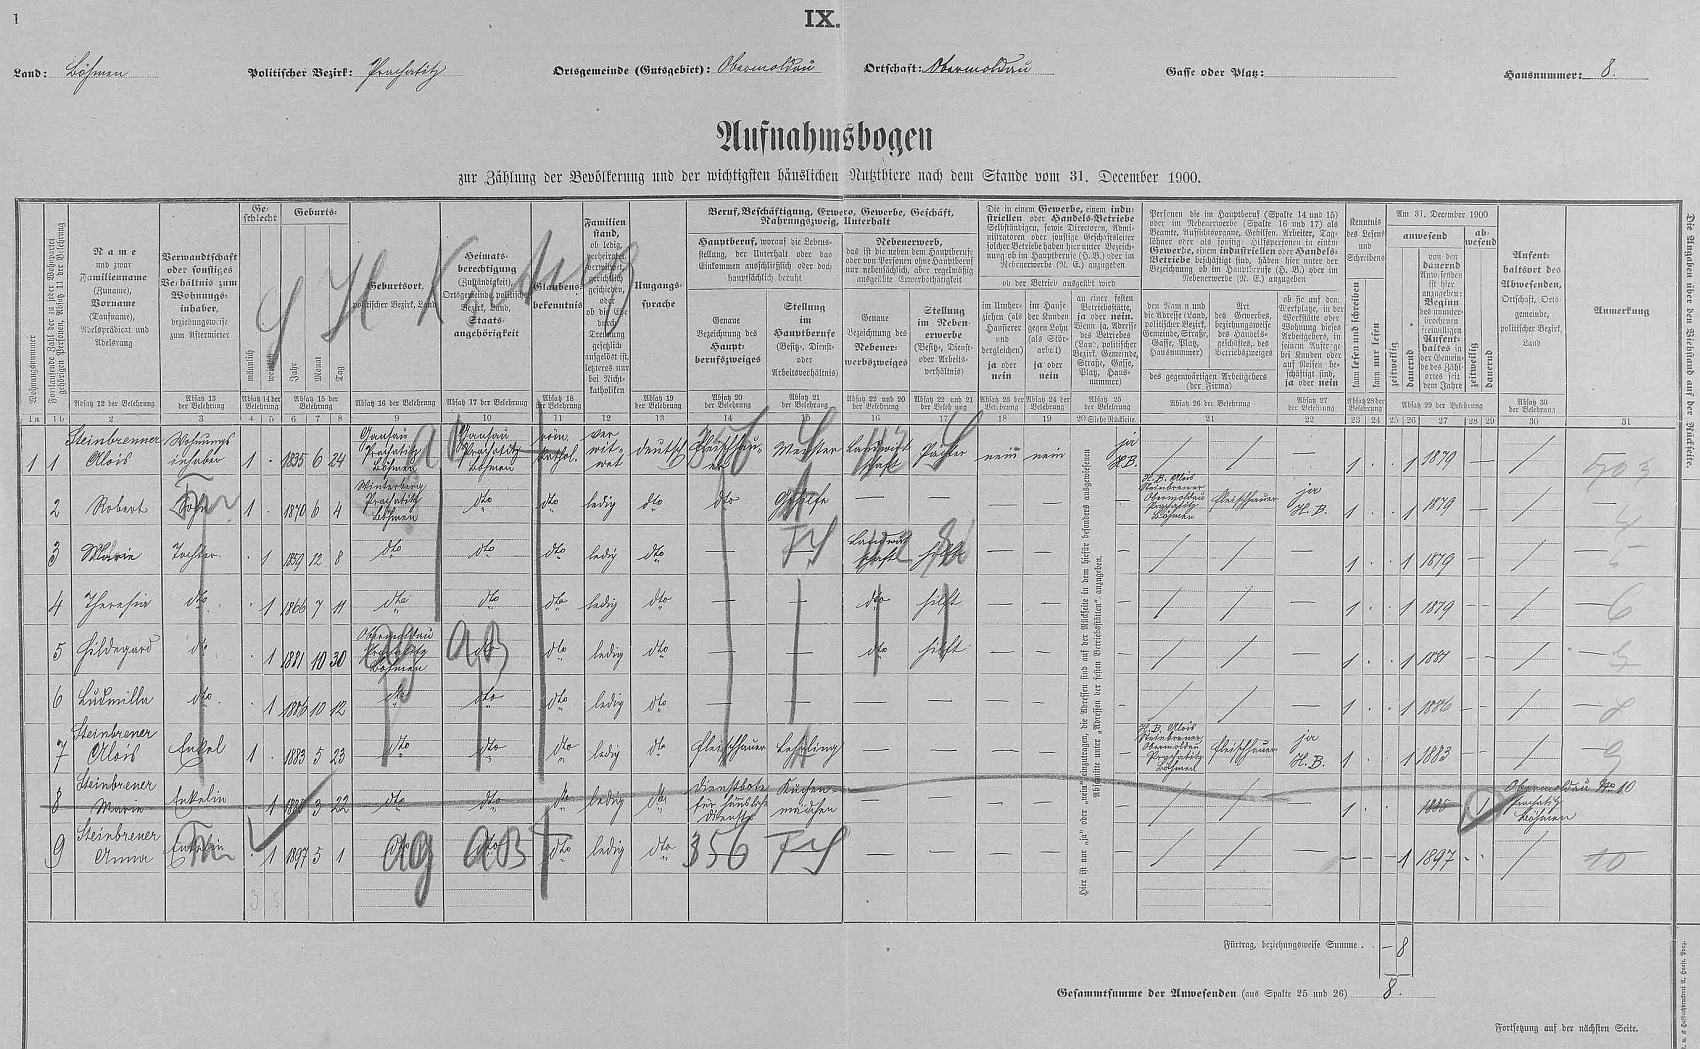 Arch sčítání lidu z roku 1900 pro stavení čp. 8 v Horní Vltavici s rodinou Steinbrenerovou (psáni s jedním "n", jen otec Alois (*1835) se dvěma)...